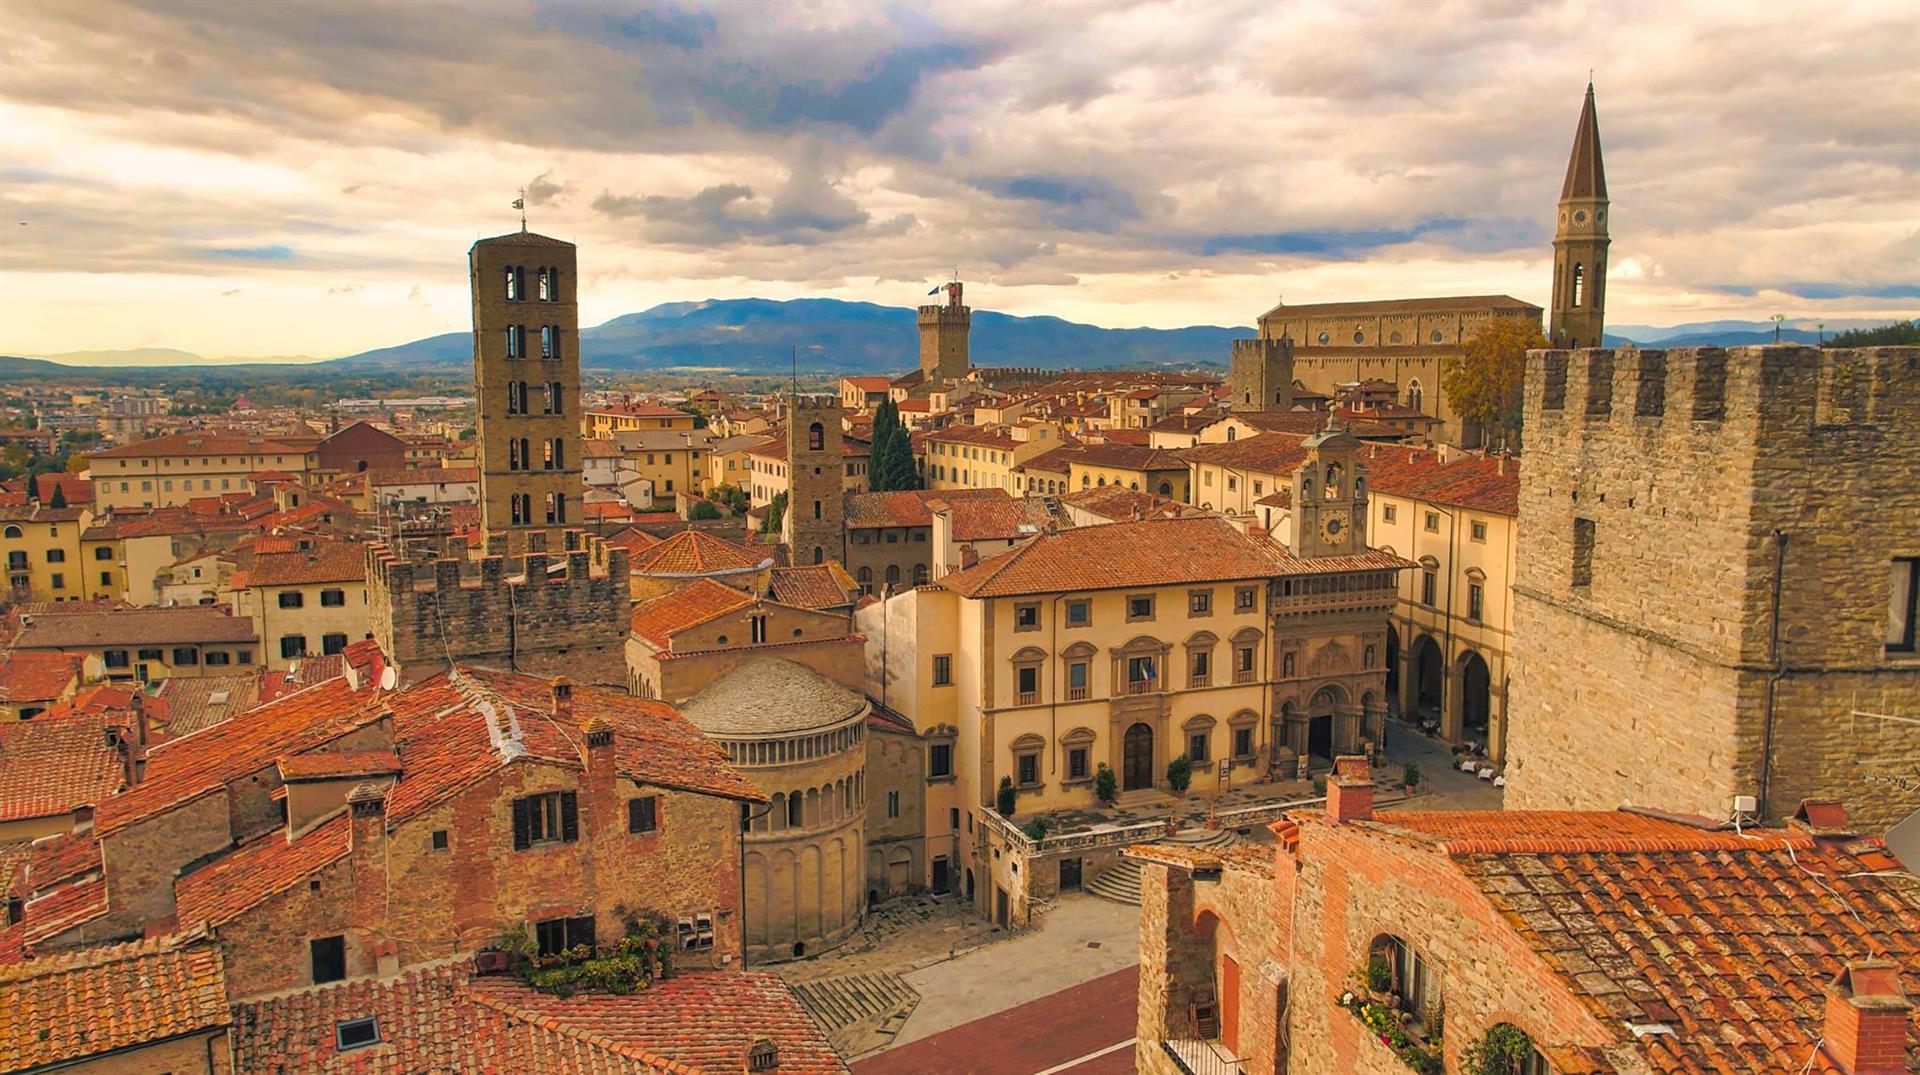 “Adesso un percorso per la ‘ricchezza educativa e la coesione sociale’ come progetto collegato ad Arezzo Capitale della Cultura 2021”